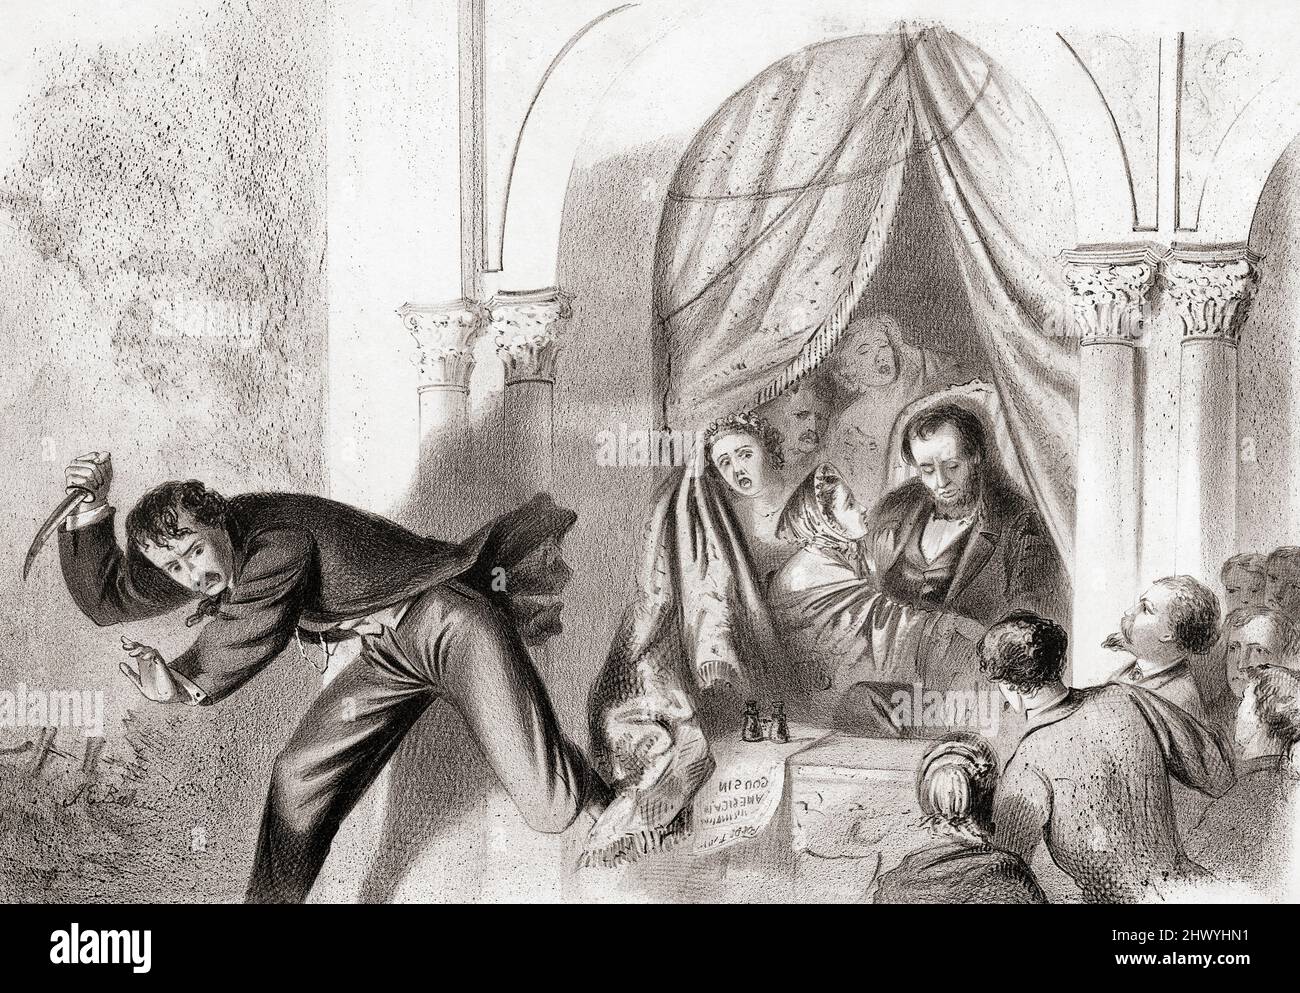 Das Attentat auf Präsident Abraham Lincoln am 14. April 1865 von John Wilkes Booth im Ford's Theatre, Washington, während des Theaterstücks Unser amerikanischer Cousin. Nach dem Schießen sprang Lincoln Booth von der Präsidentenbox auf die Bühne, um ihm zu entkommen. Nach einer zeitgenössischen Illustration. Stockfoto